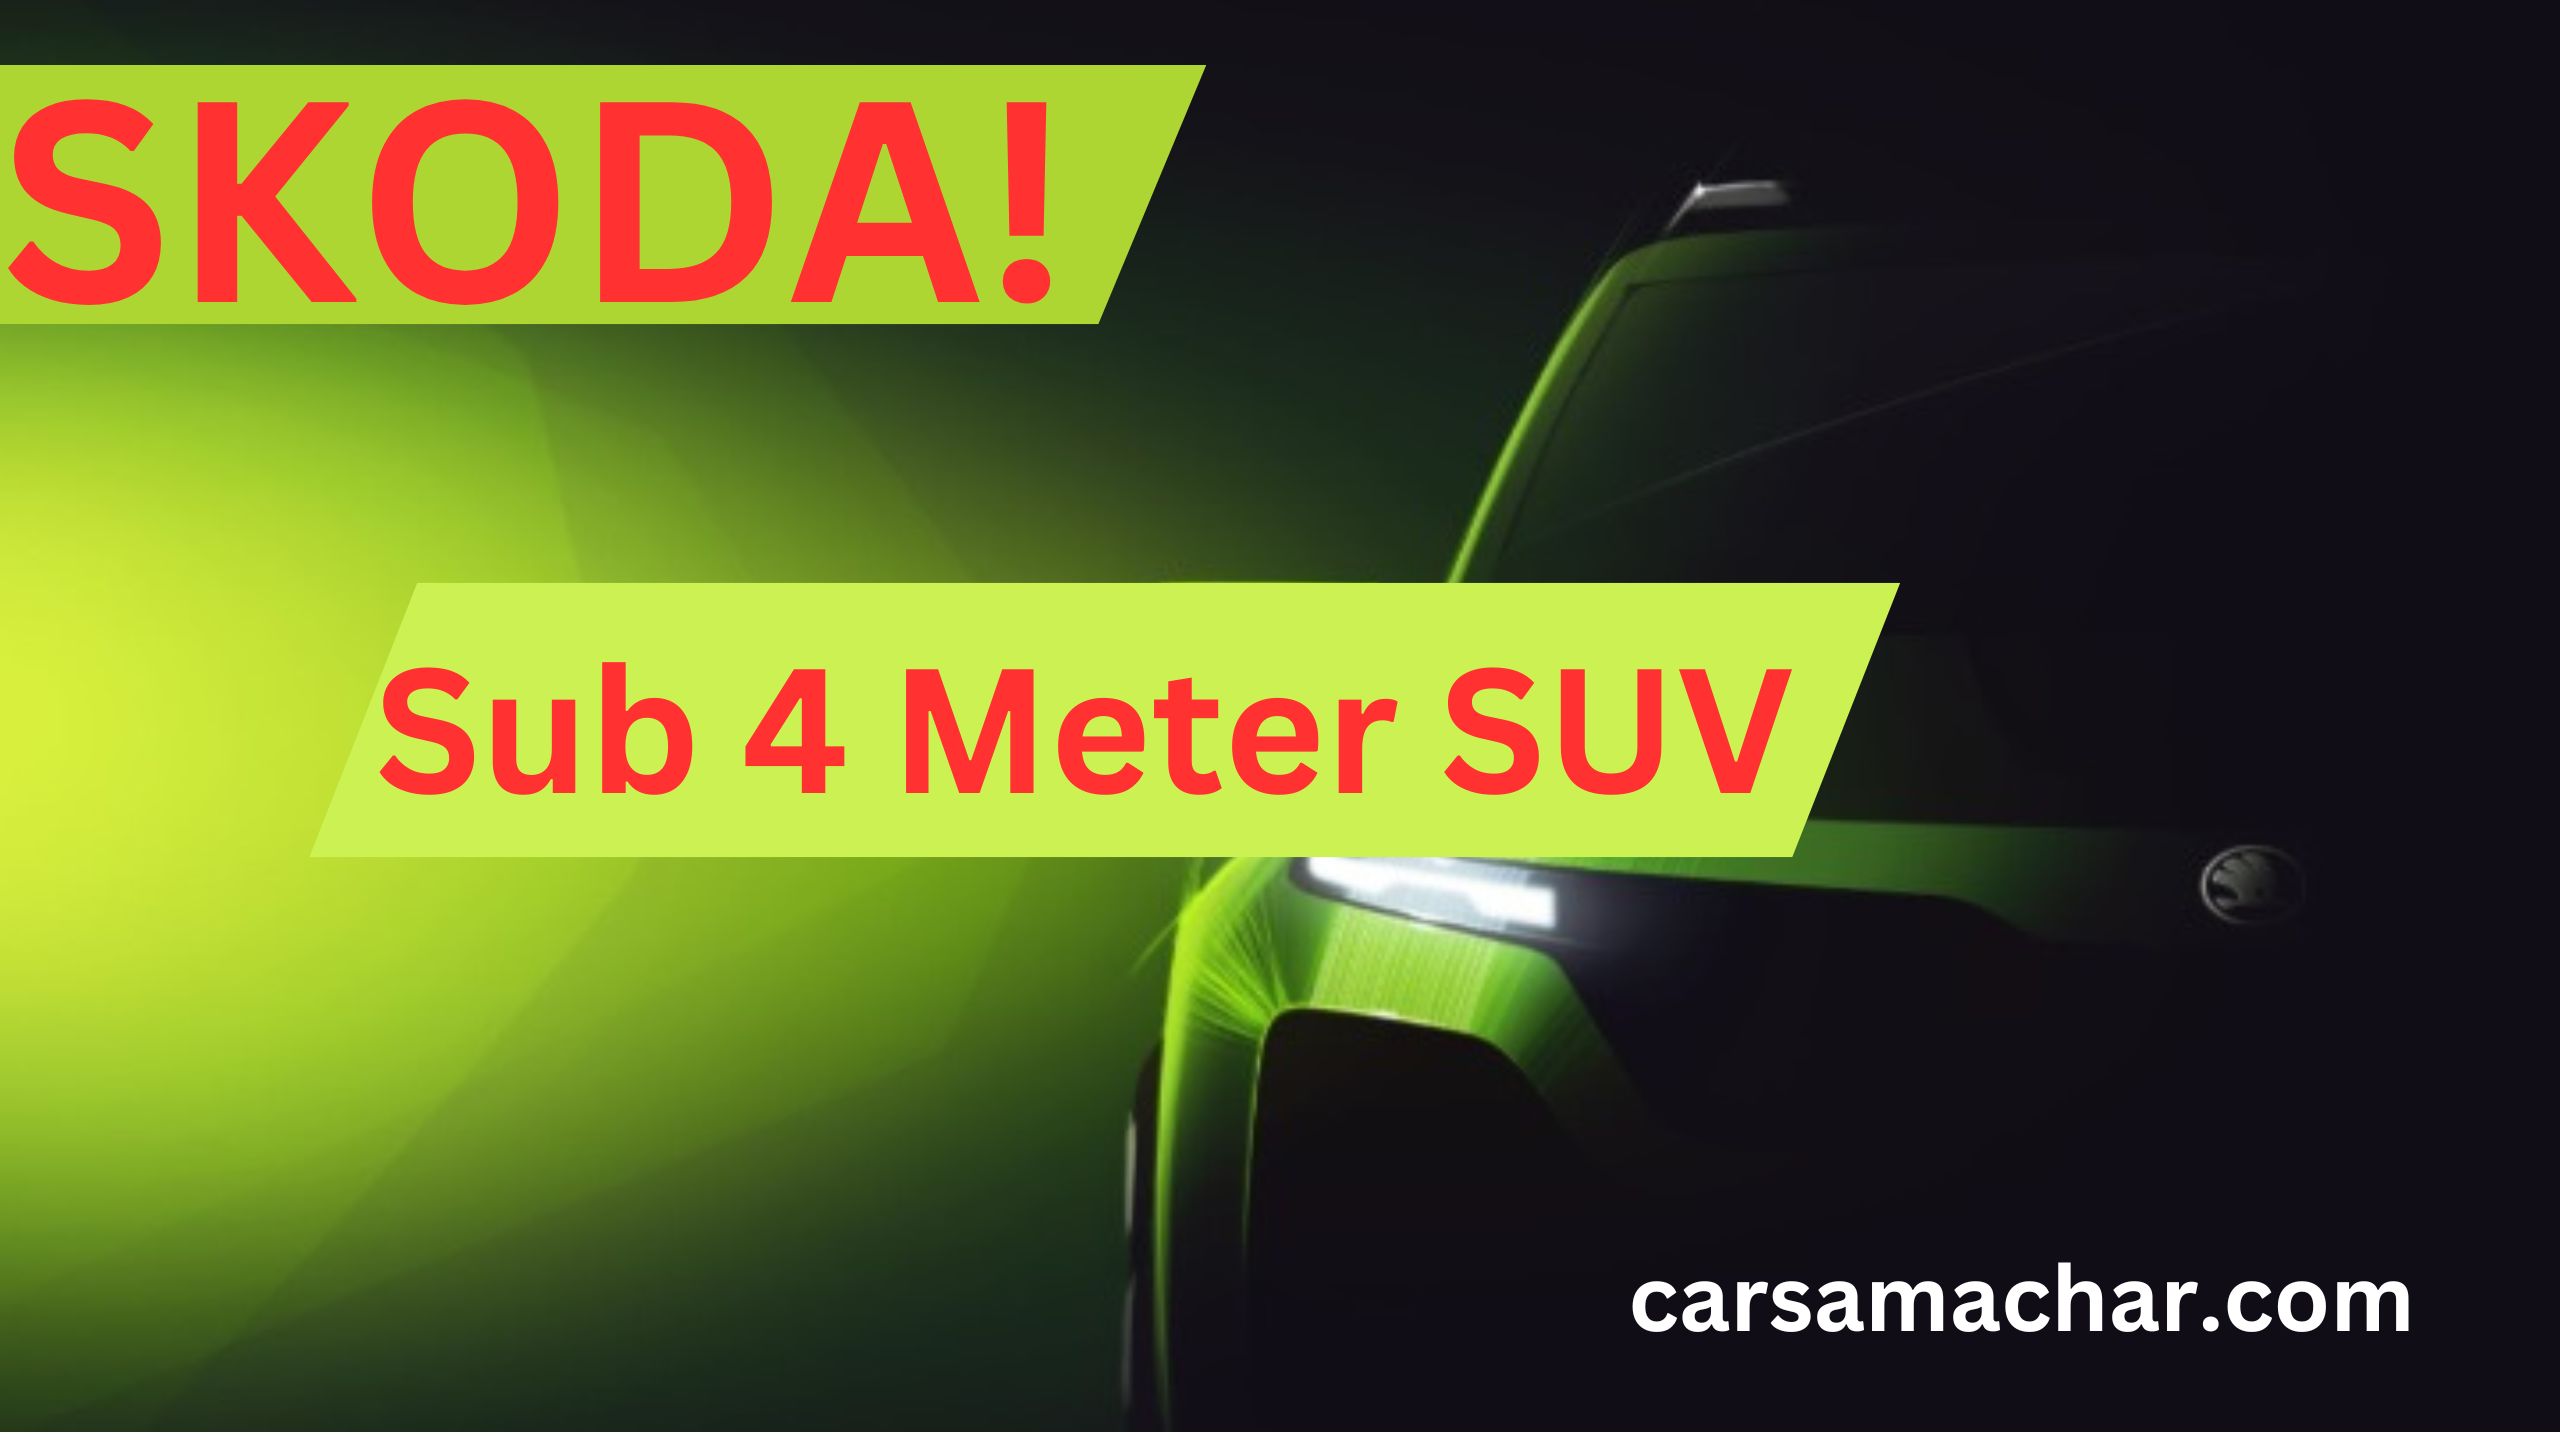 Skoda Sub 4 Meter SUV Launched Soon ! जानते हैं क्या Dynamic Features है इसमें|